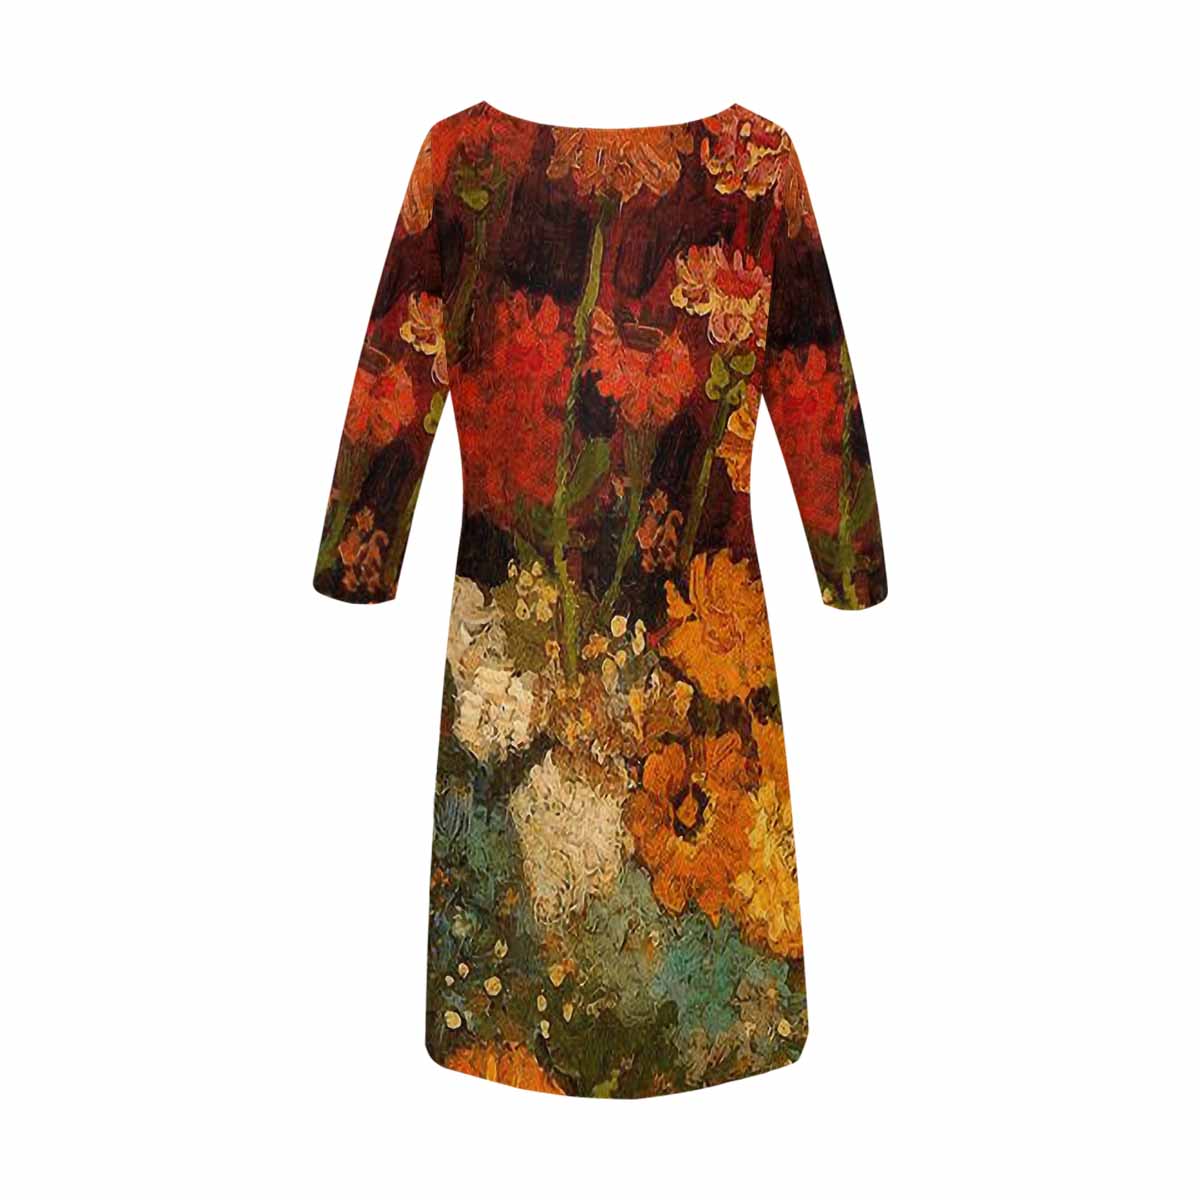 Vintage floral loose dress, model D29532 Design 31